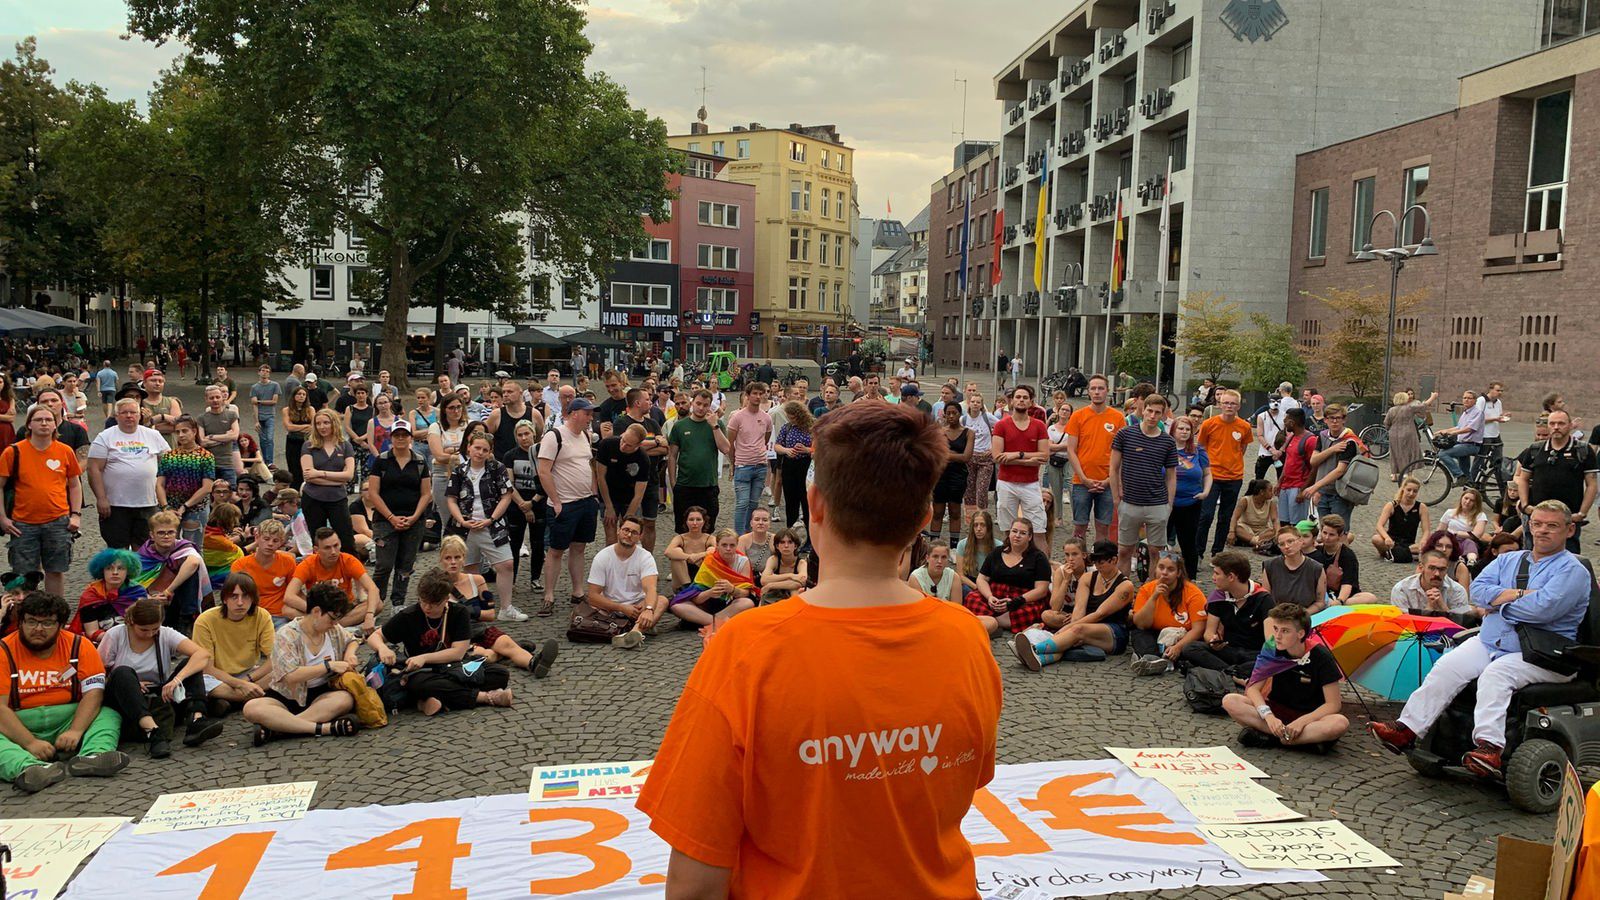 Stadt Köln will Beratungsstelle für queere Jugendliche streichen